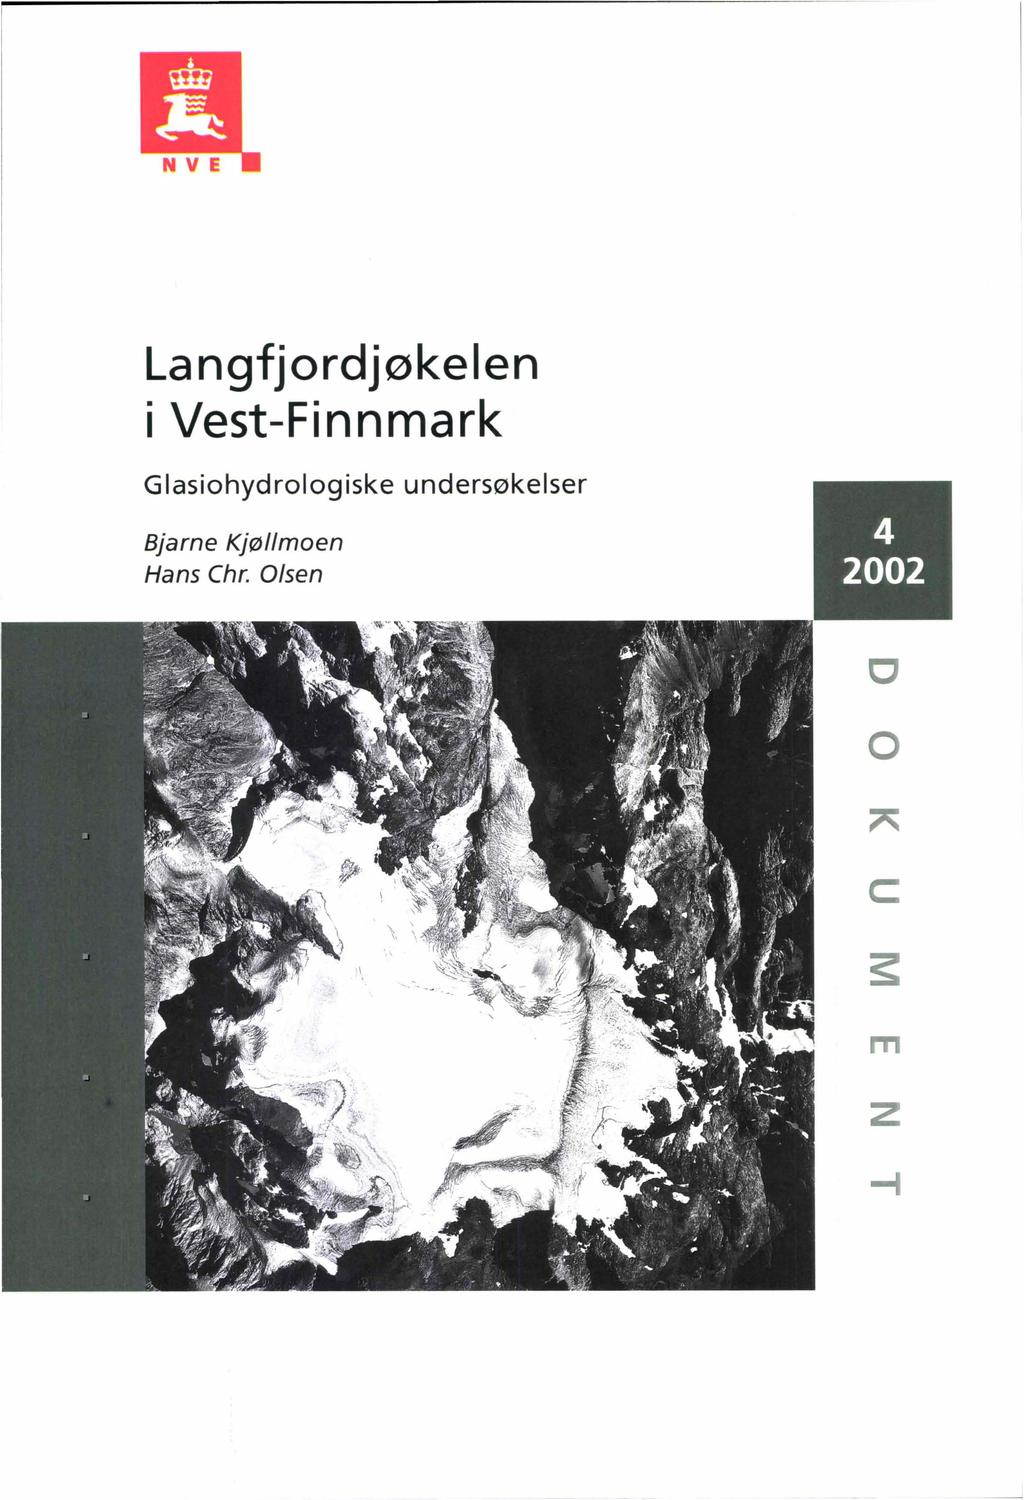 Langfjordjøkelen i Vest-Finnmark GI asiohyd rol og iske